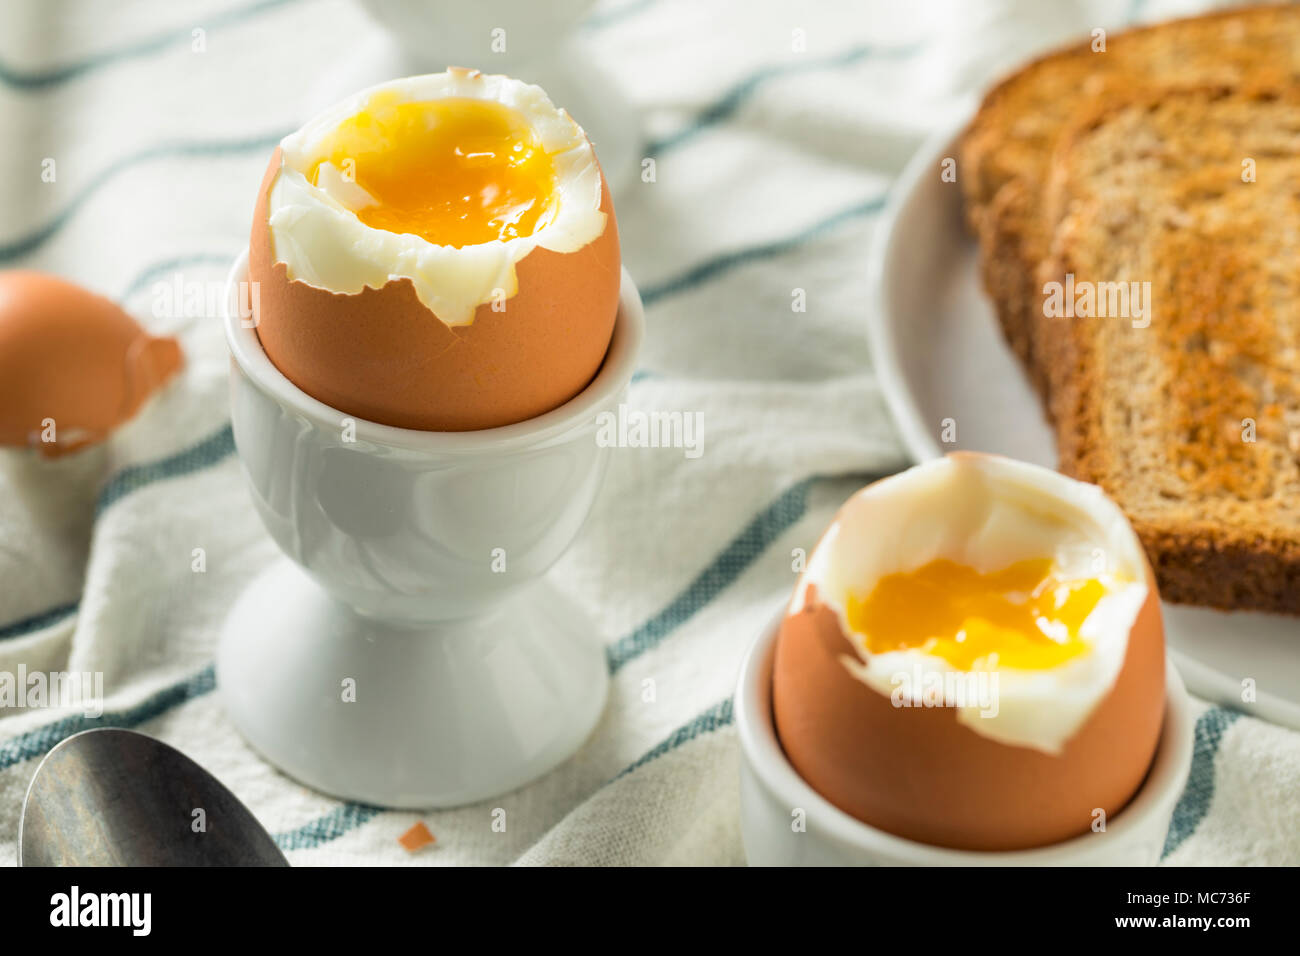 Hausgemachte weich gekochtes Ei in eine Tasse mit Toast Stockfotografie ...